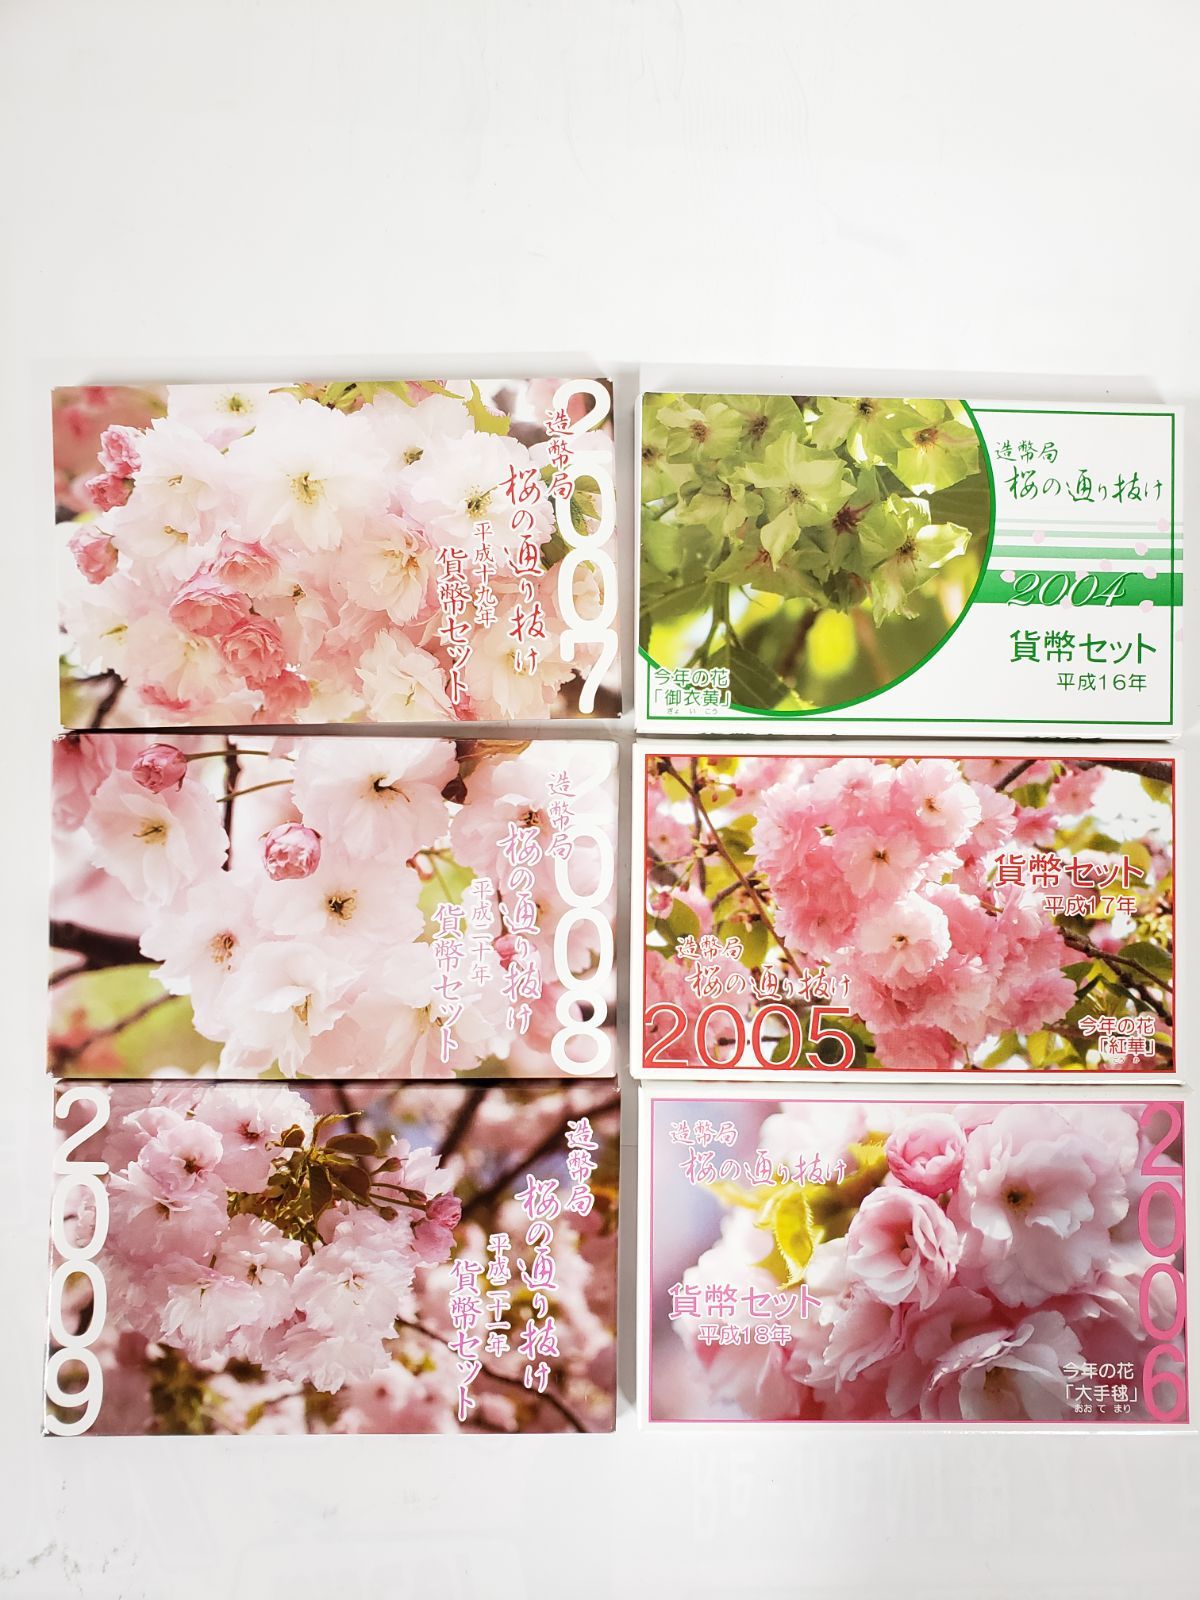 公式正規店 造幣局 桜の通り抜け 貨幣セット ミントセット 今年の花 